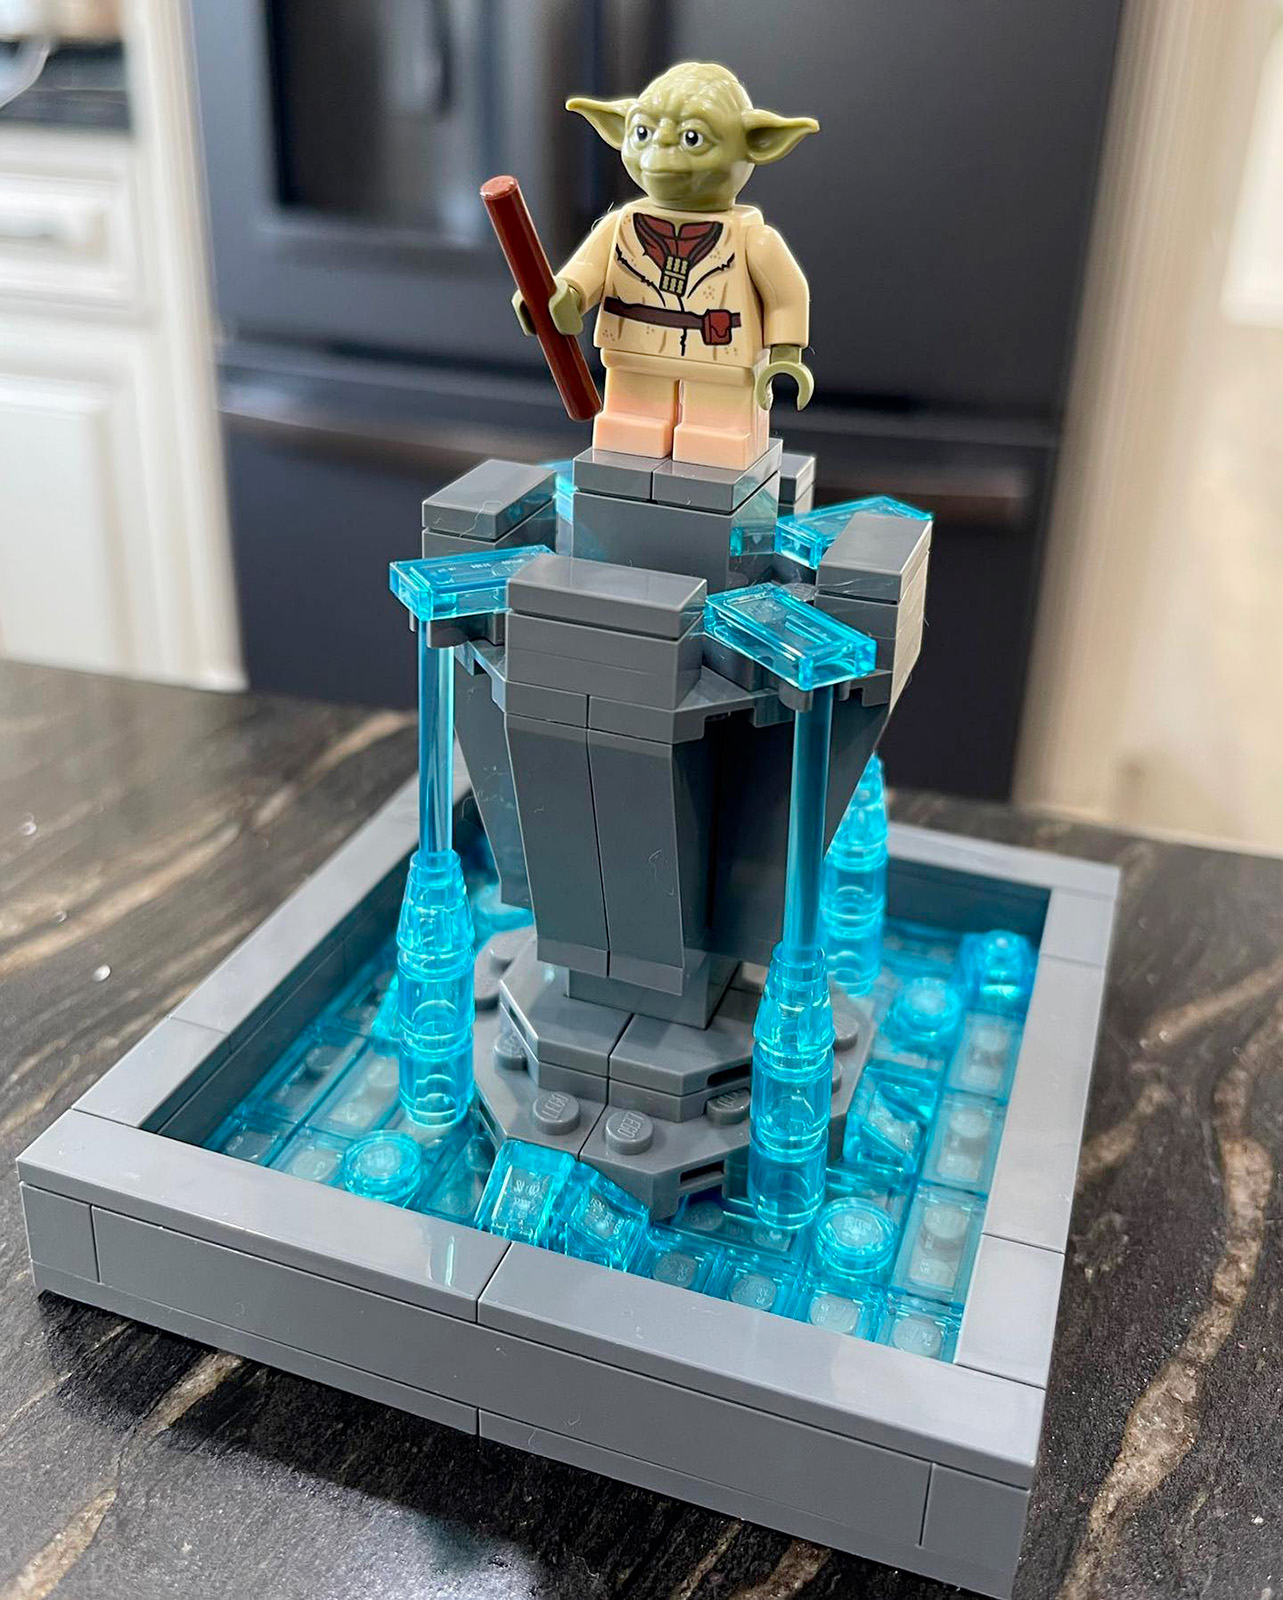 LEGO Star Wars I Love NY Yoda